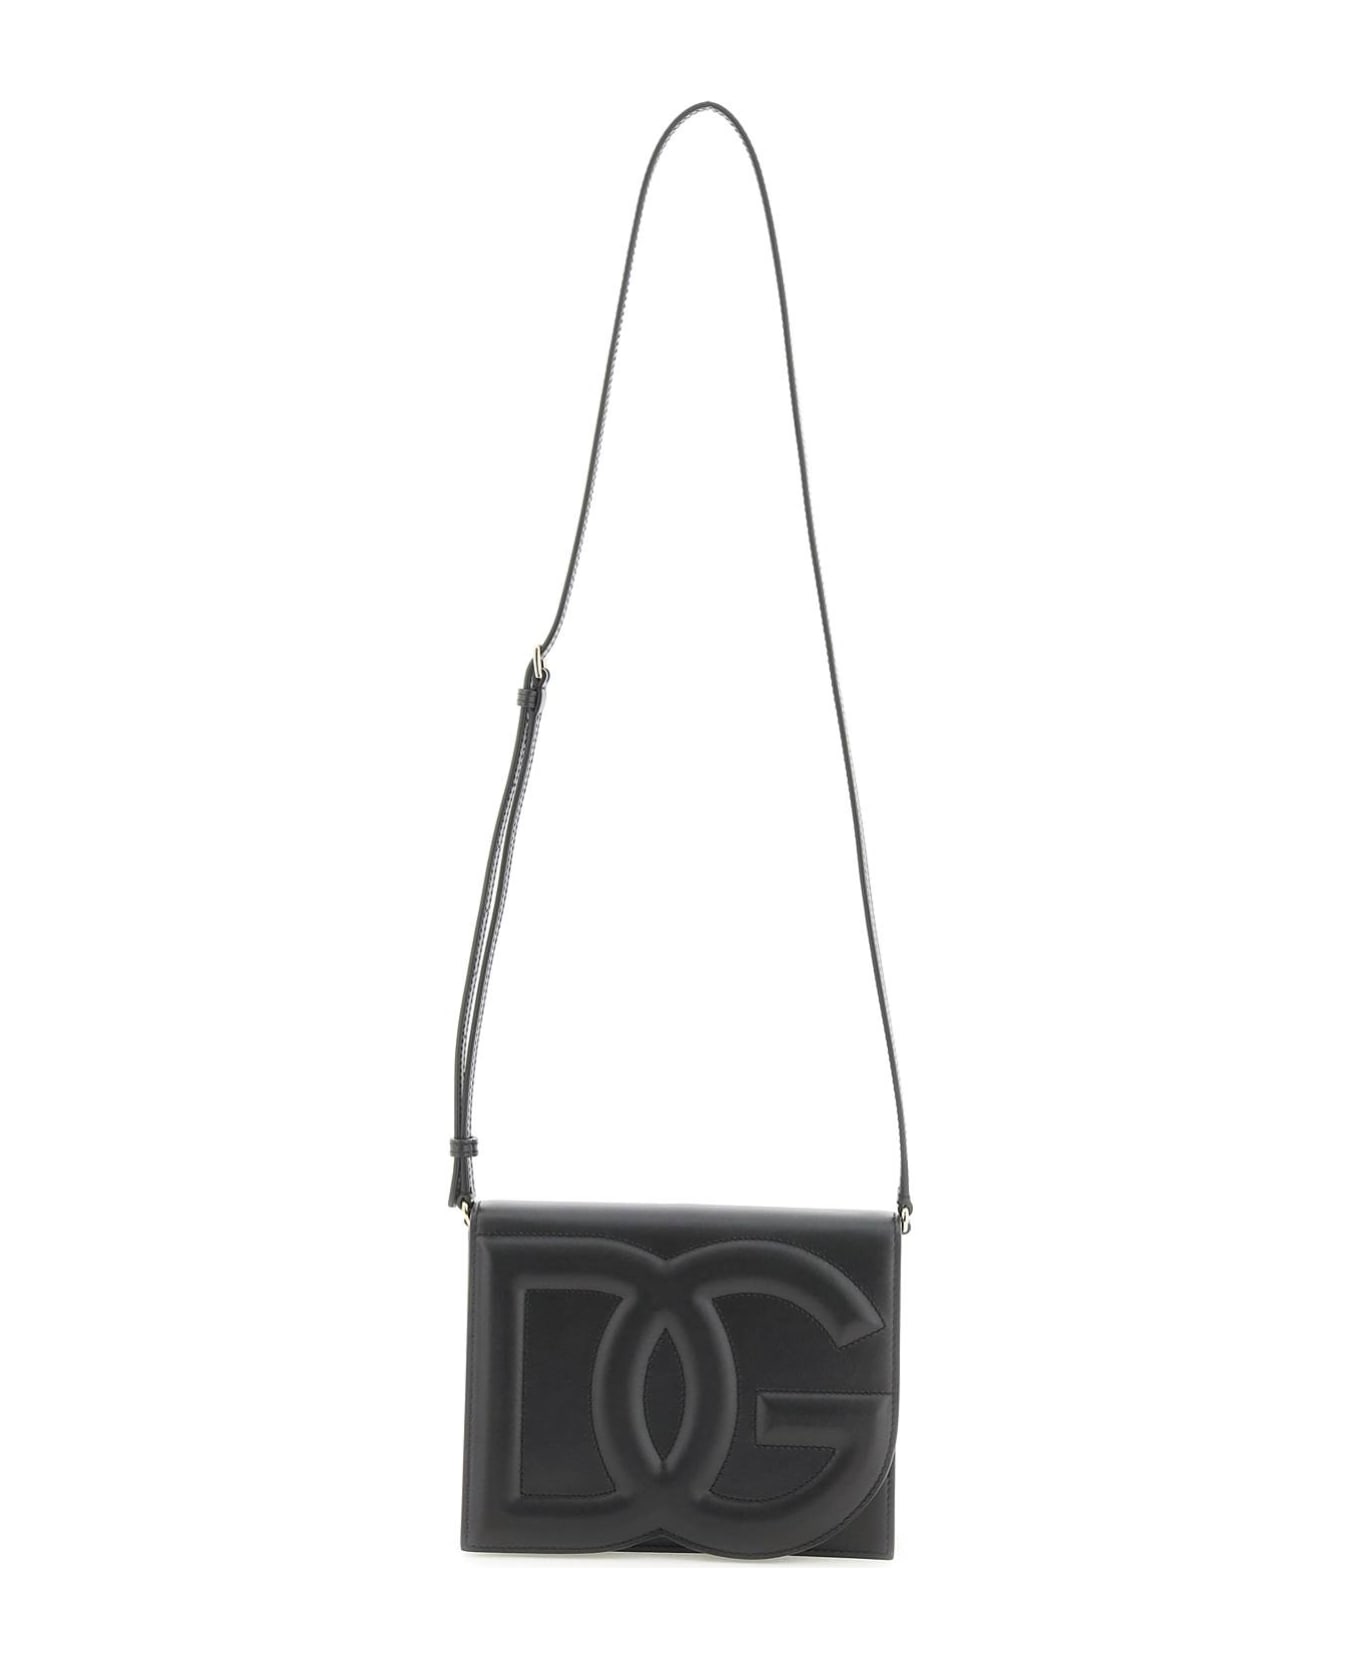 Dolce & Gabbana Leather Shoulder Bag - Black クラッチバッグ